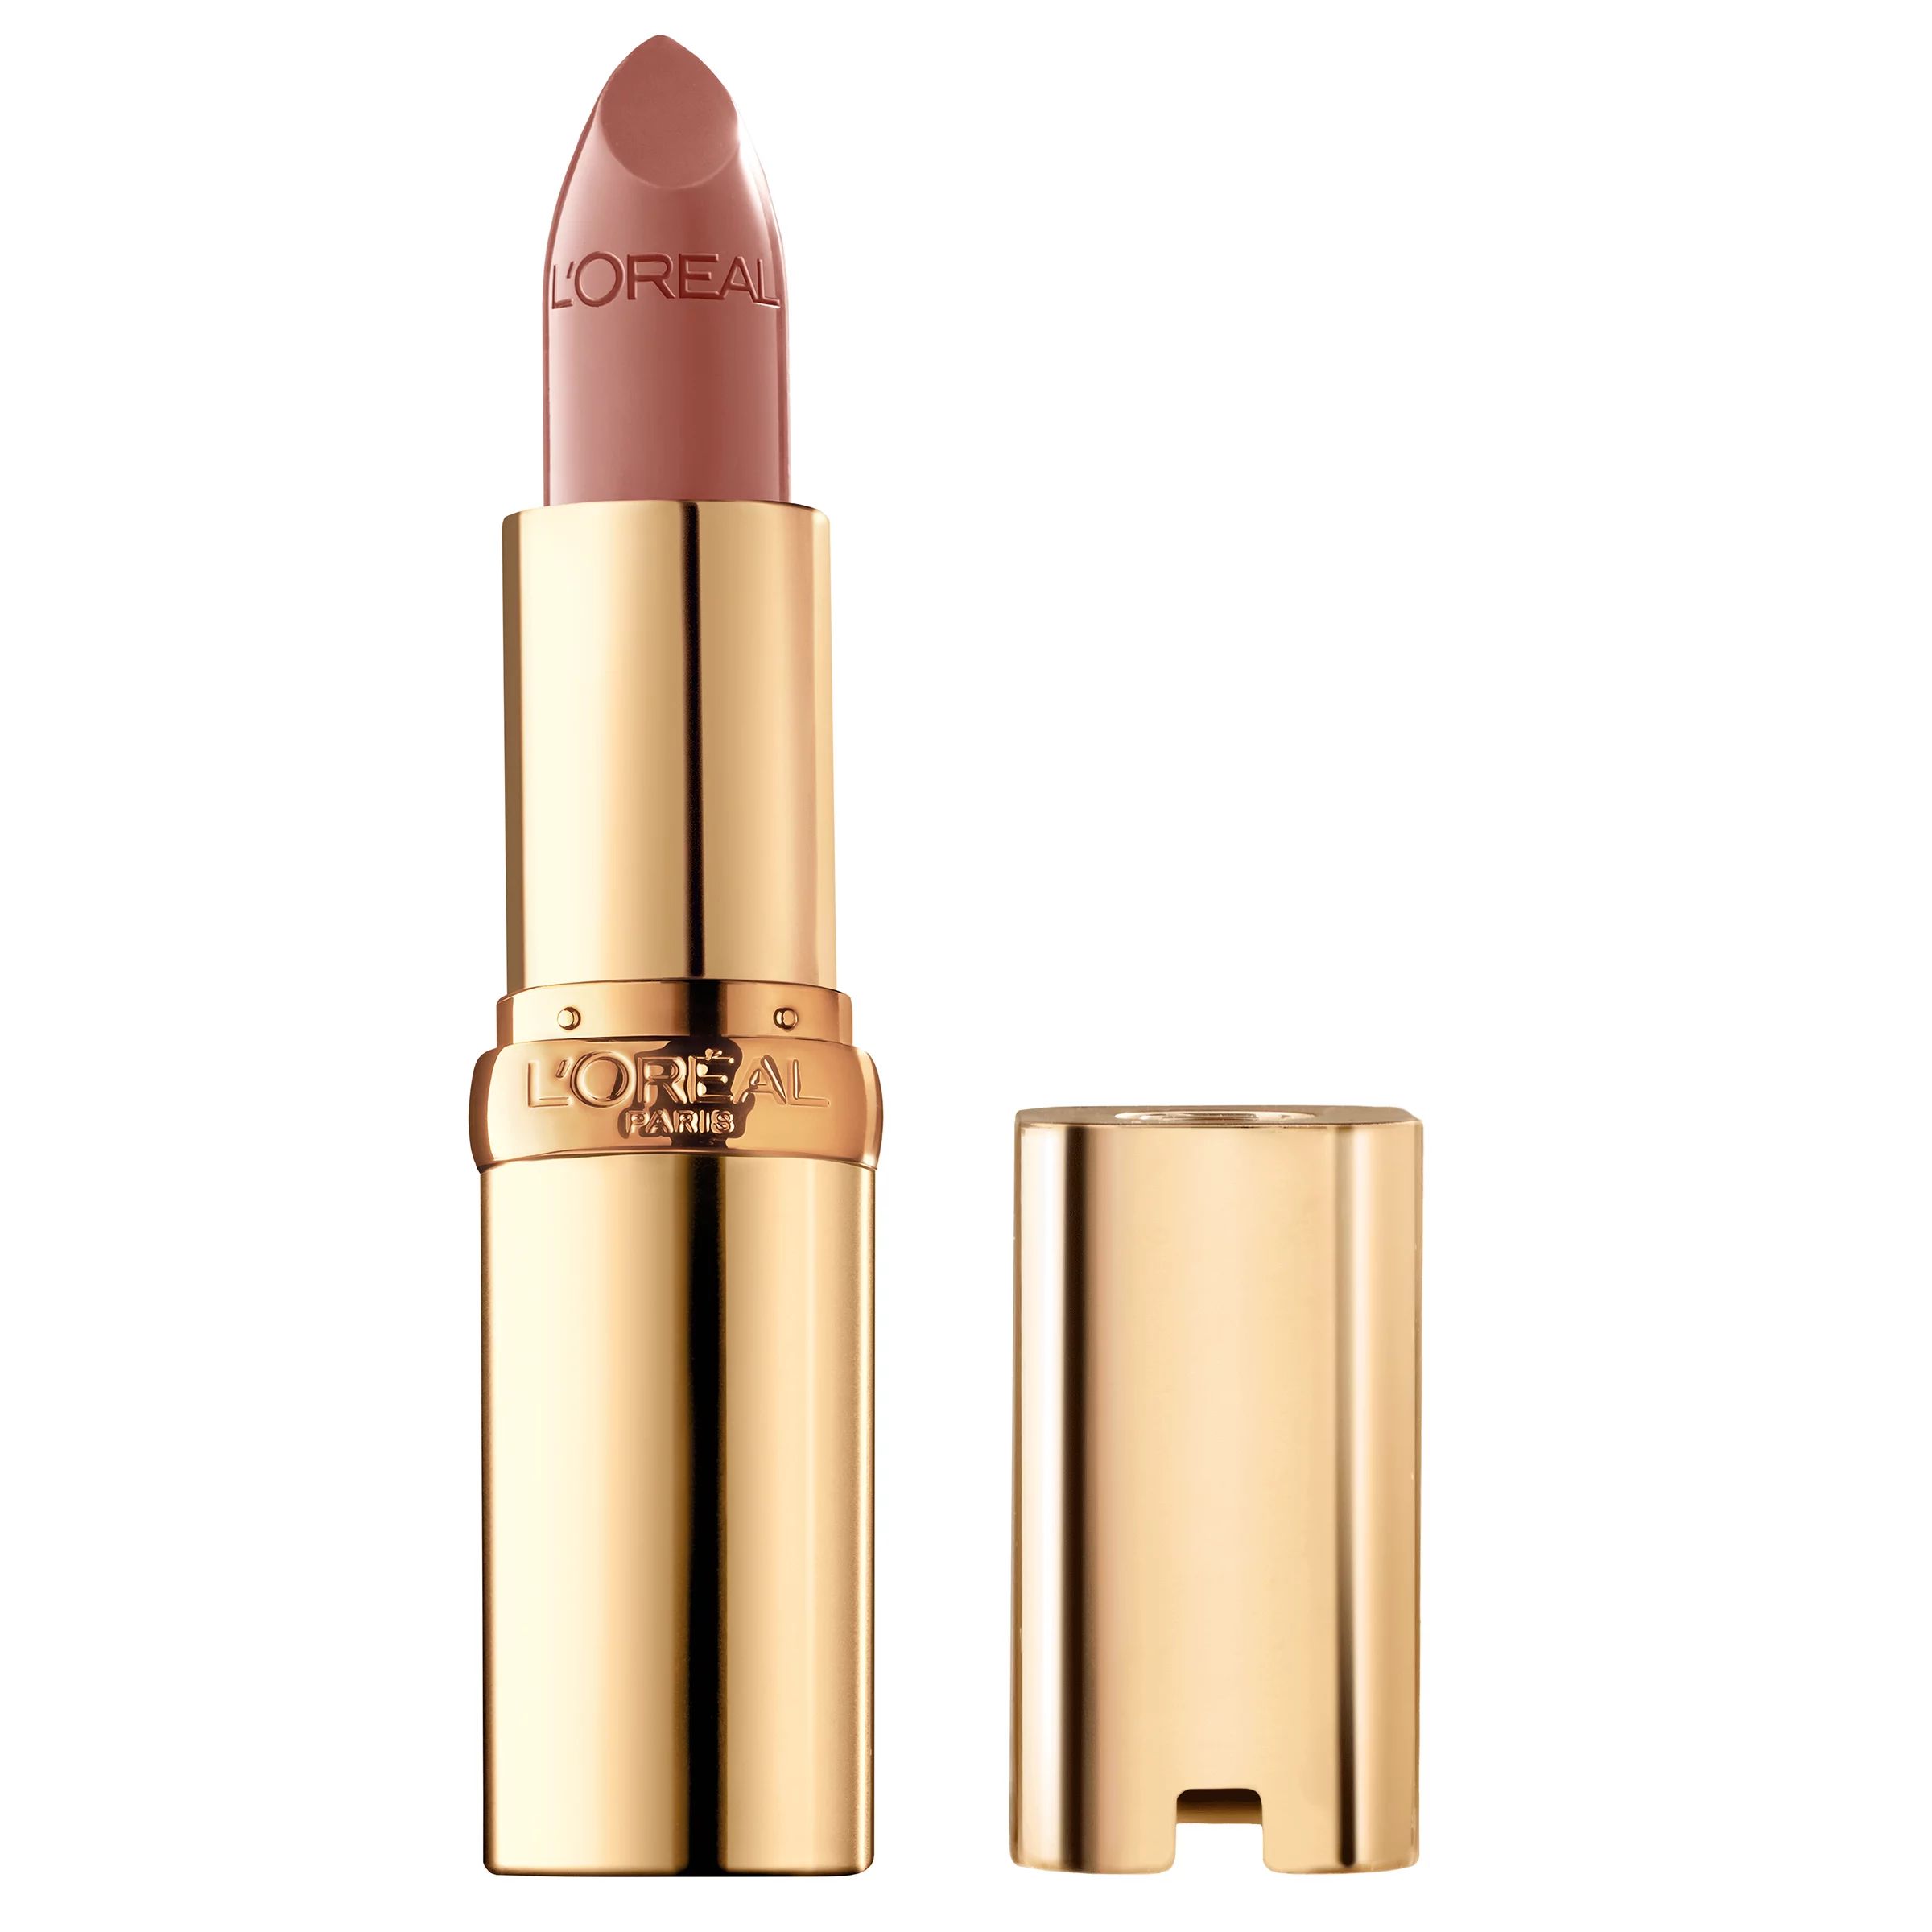 L'Oreal Paris Colour Riche Original Satin Lipstick for Moisturized Lips, Fairest Nude, 0.13 oz | Walmart (US)